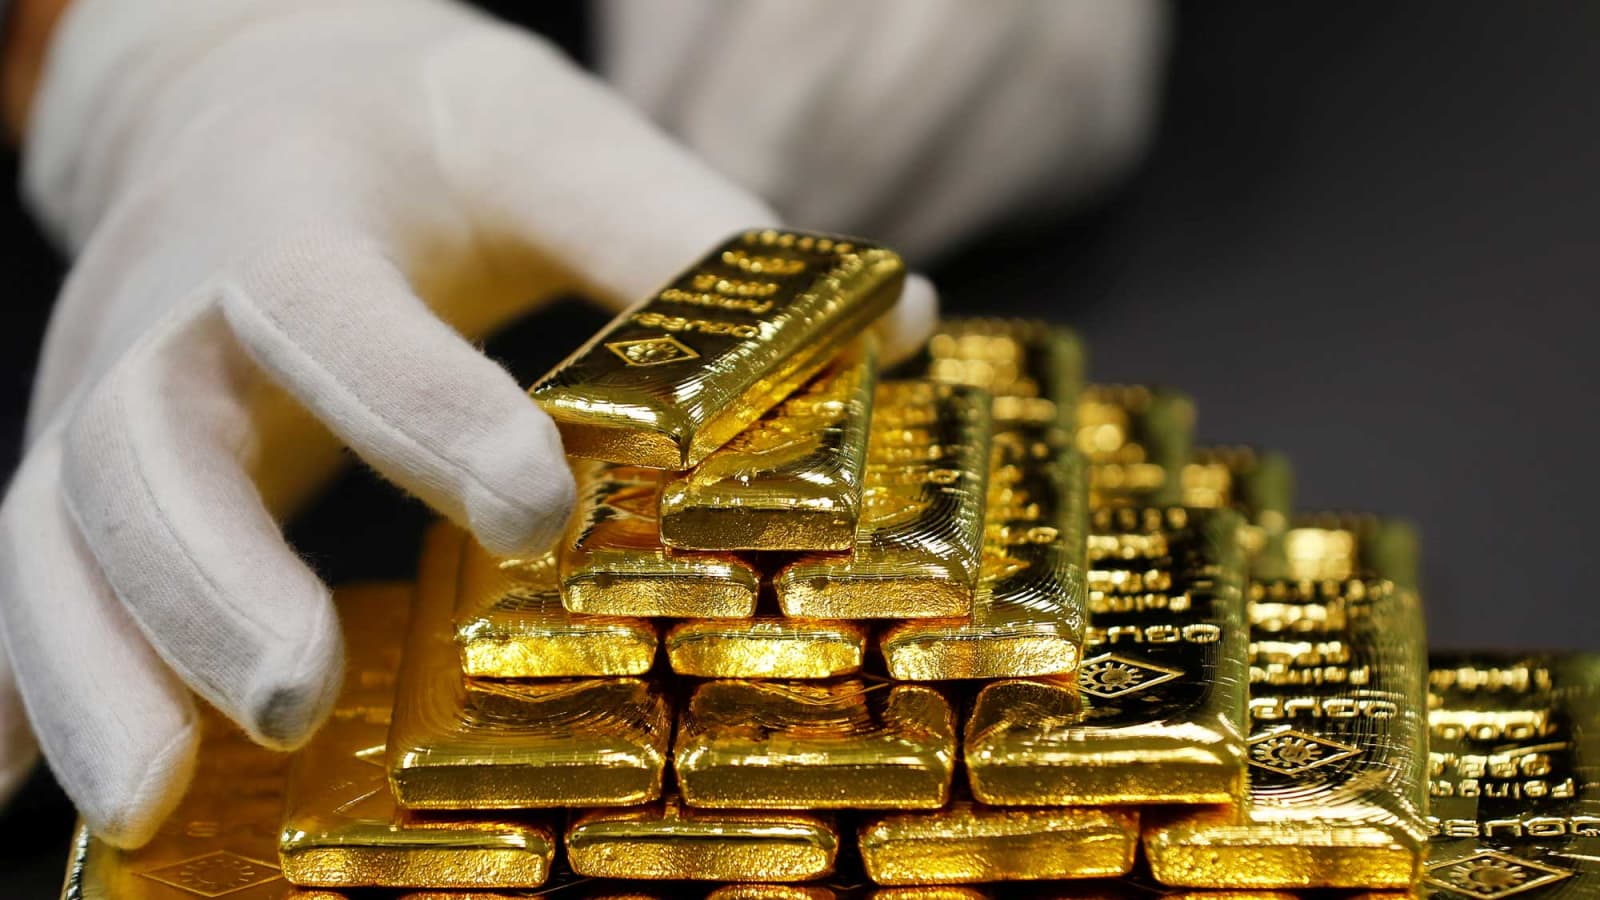 قیمت طلا امروز چند است؟ (سه شنبه 19 مرداد 1400)